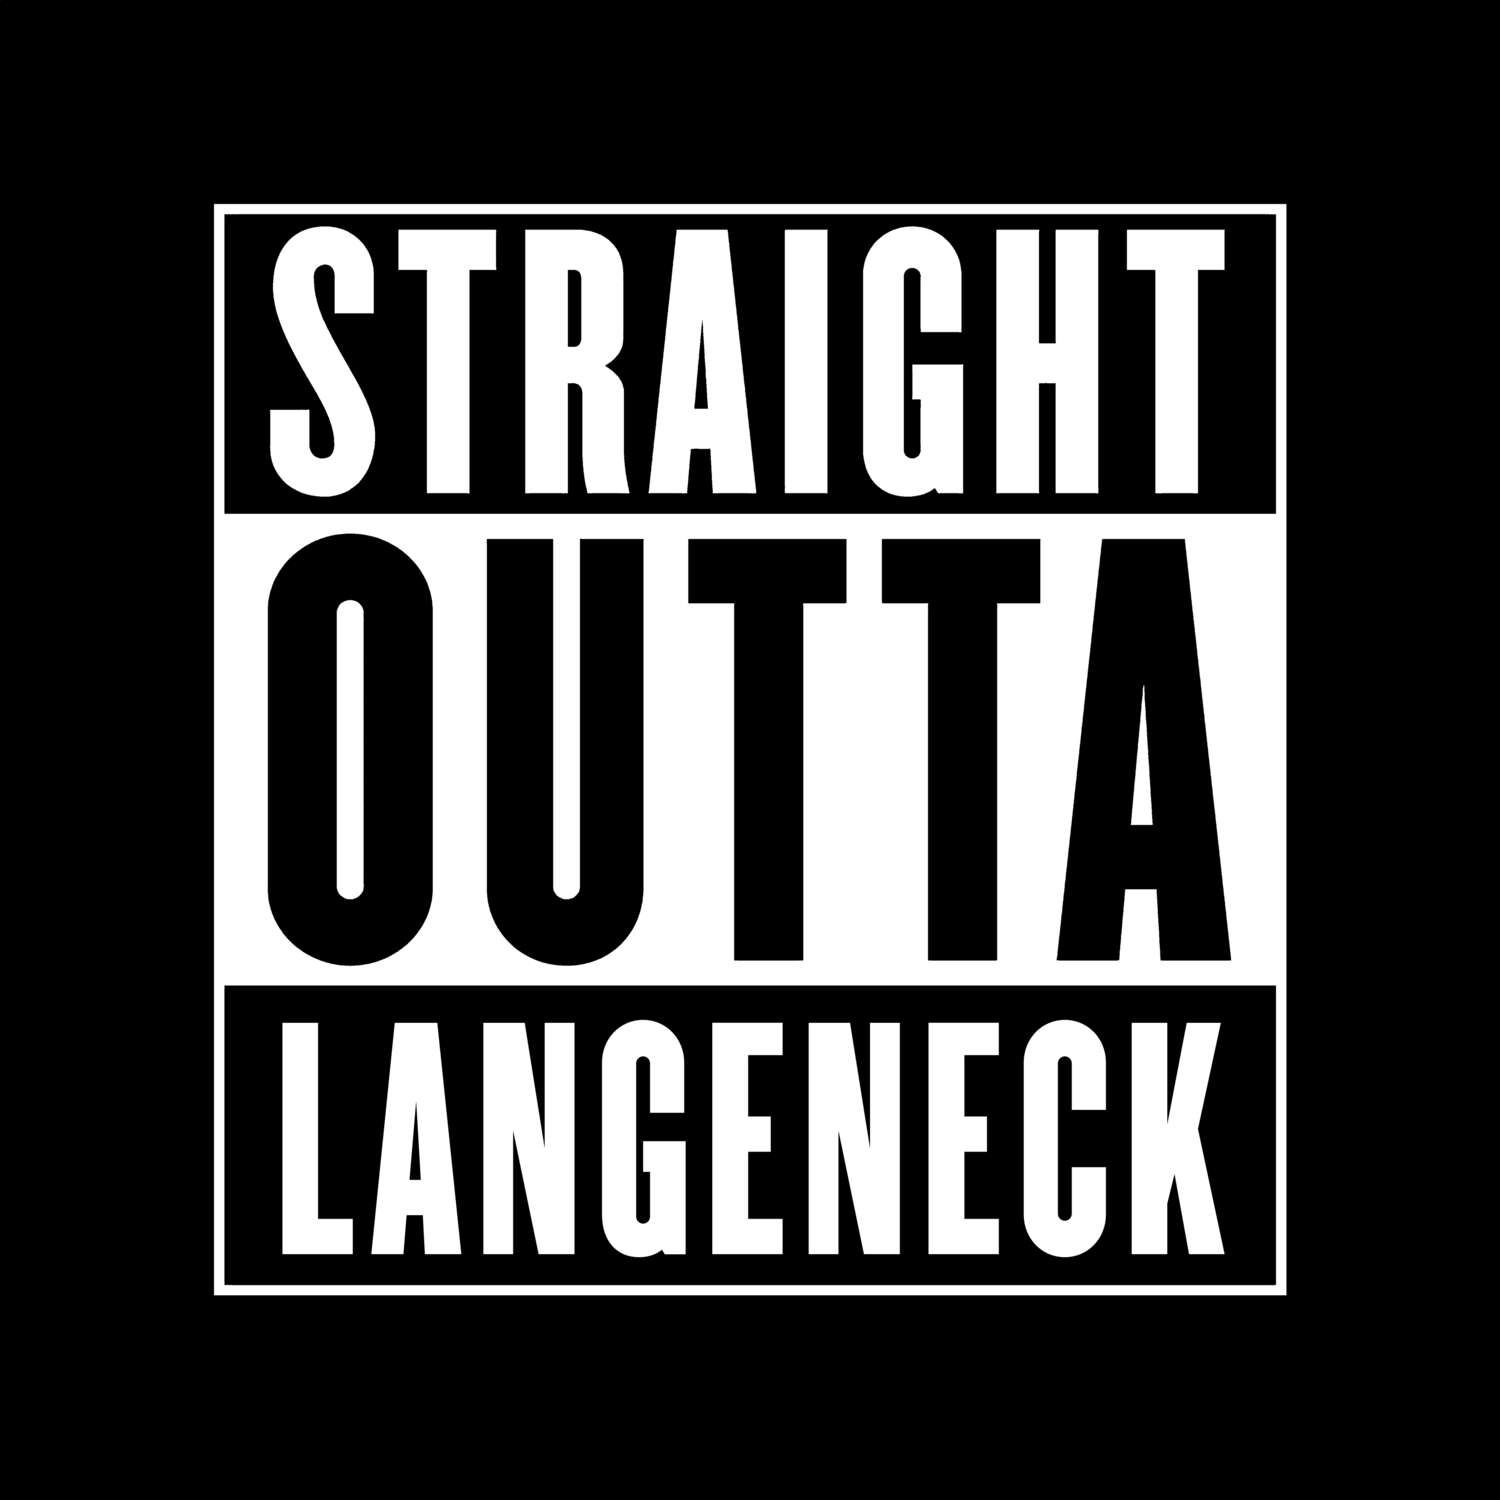 Langeneck T-Shirt »Straight Outta«